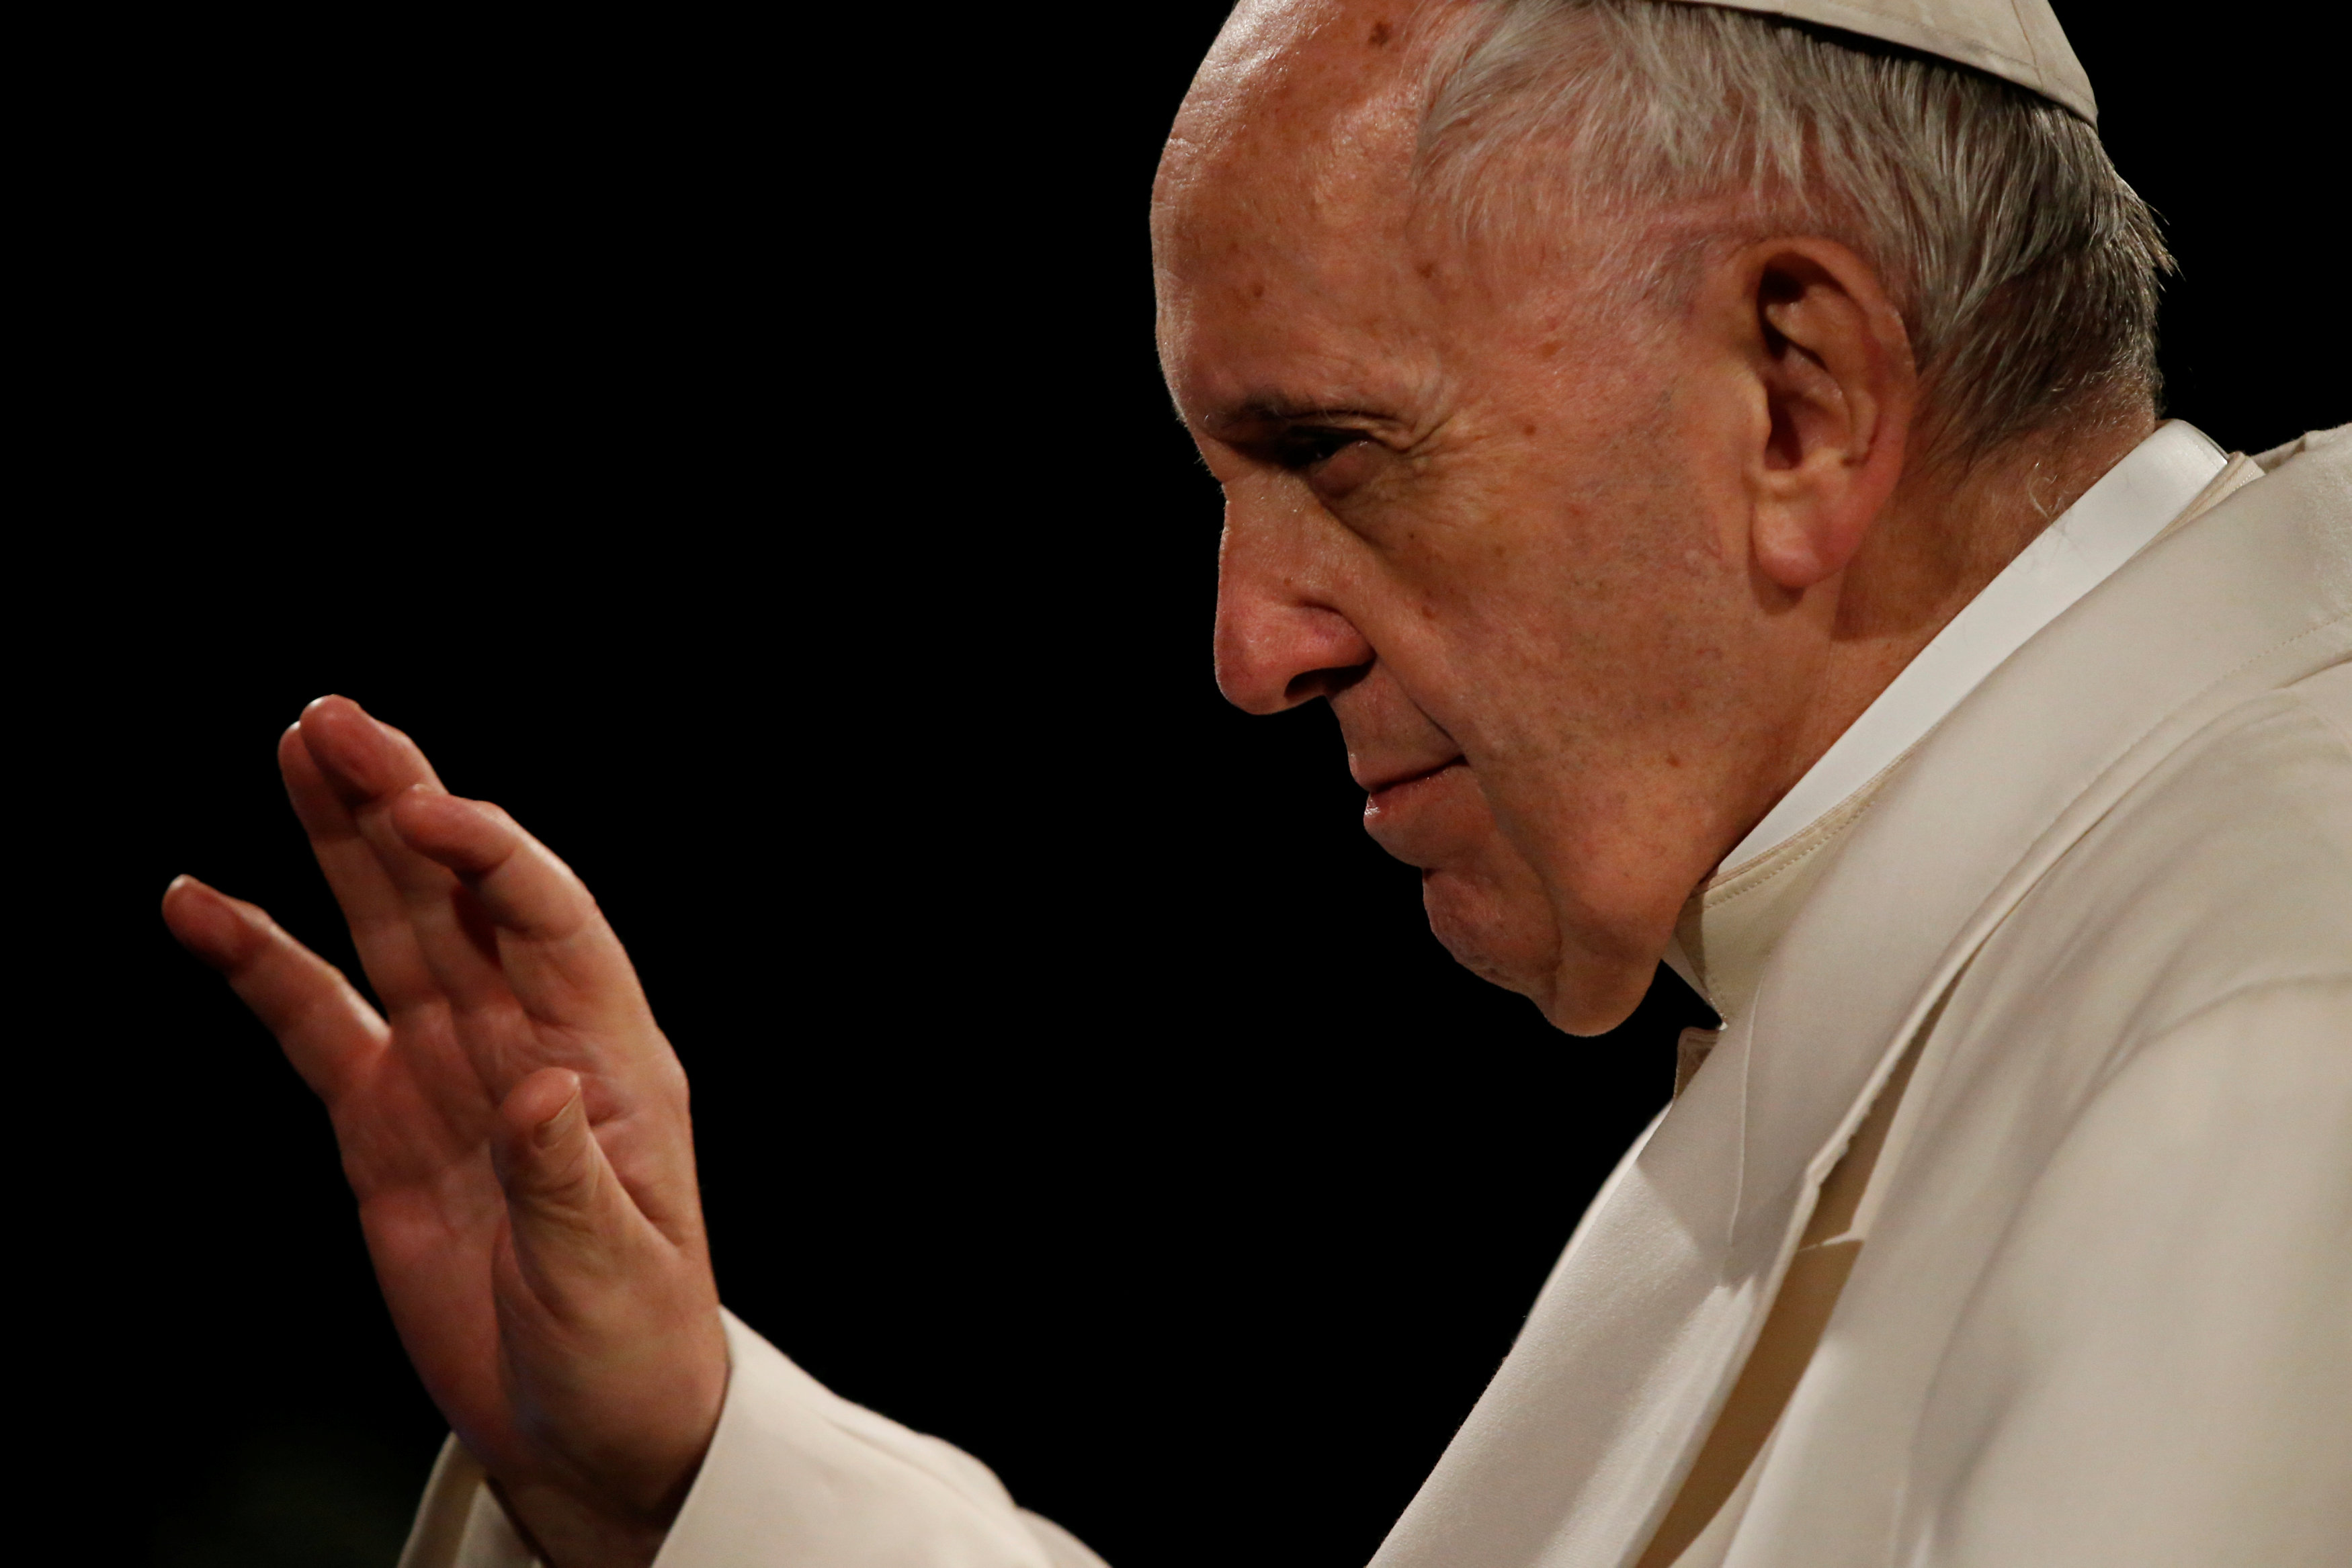 El Papa acepta renuncia del arzobispo australiano Philip Wilson culpable de encubrir abusos sexuales